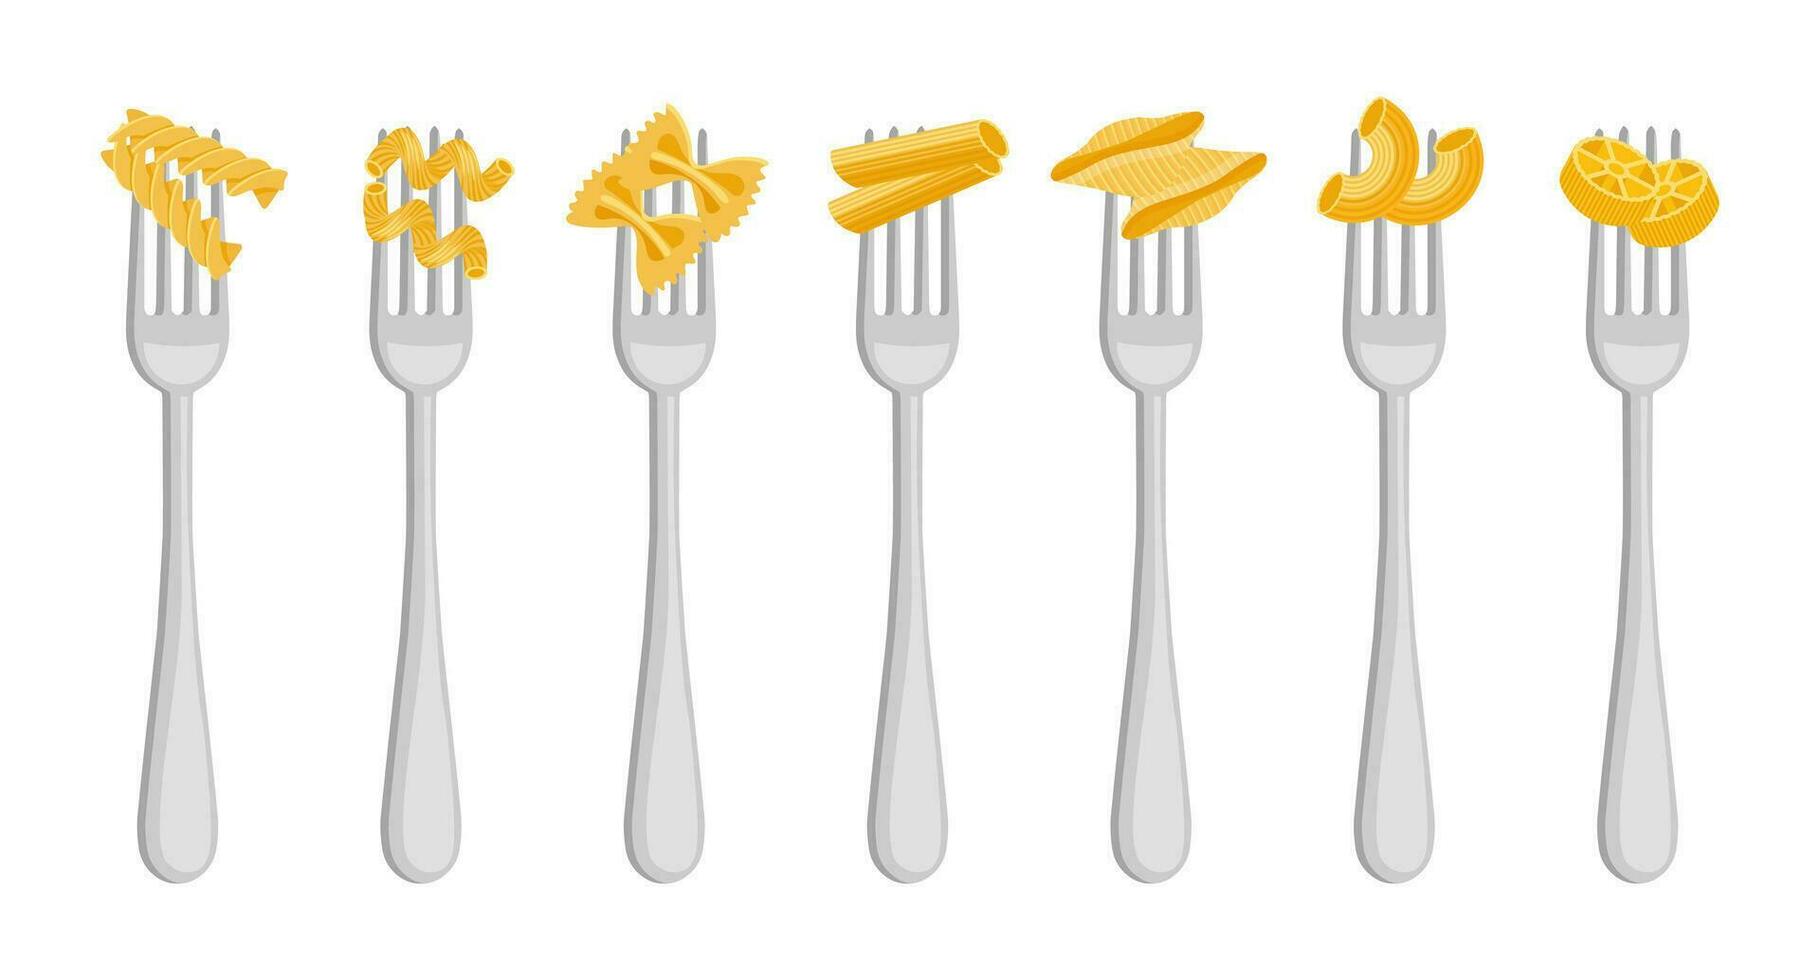 einstellen von Gabeln mit Spaghetti und Pasta auf ein Weiß Hintergrund. Essen Logos, Restaurant Speisekarte Symbole. Vektor